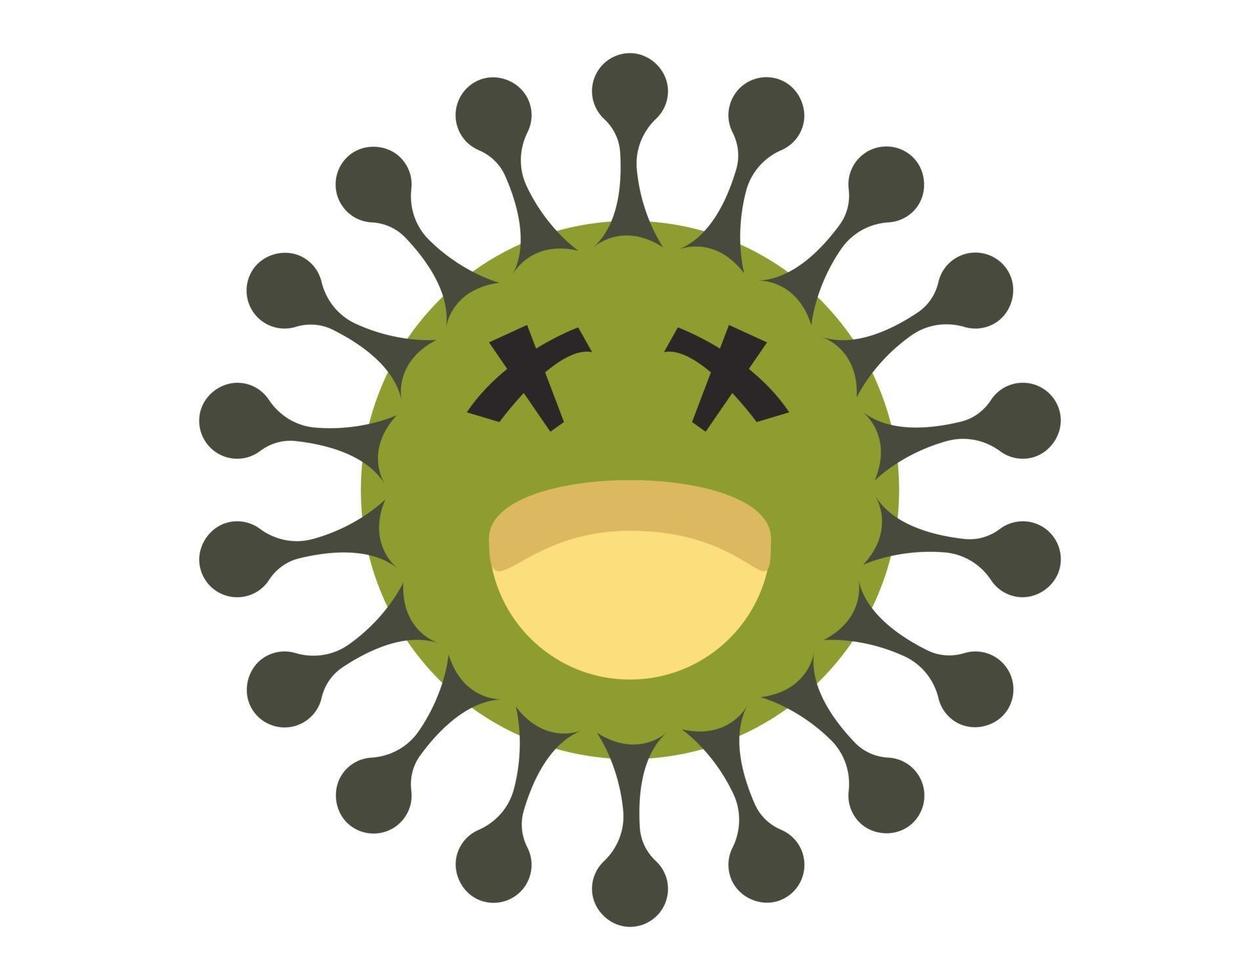 ilustração vetorial gráfico do personagem bonito de germe, bactérias e vírus. micróbio, patógeno, ícone de vírus. ilustração em vetor dos desenhos animados de um vírus. germe bonito dos desenhos animados no design de estilo simples.